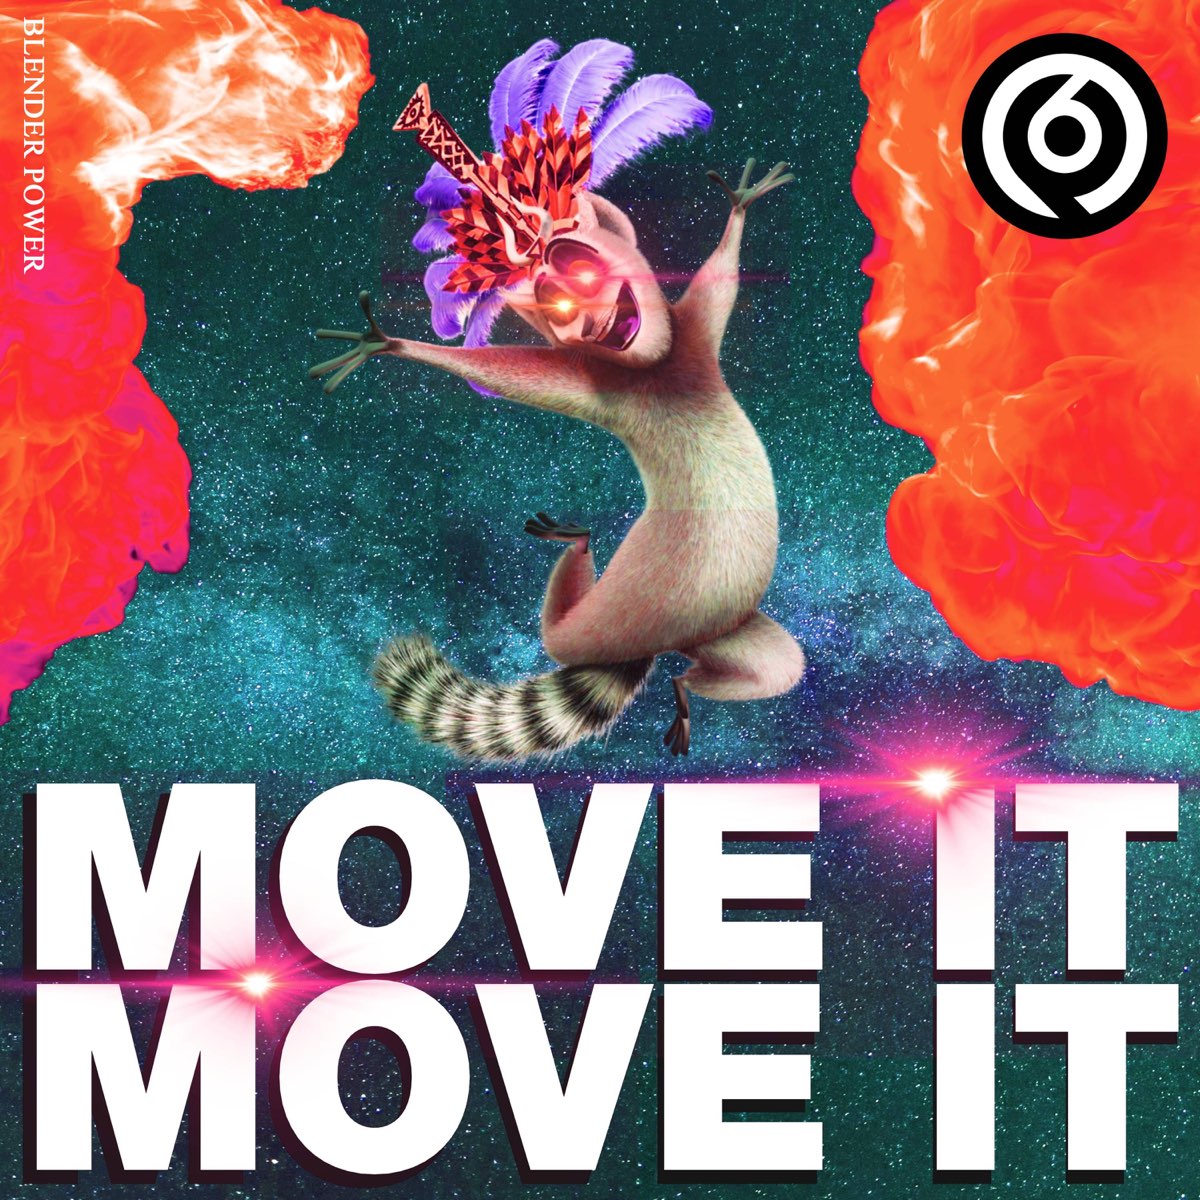 Включи песню move it move it. Move it.